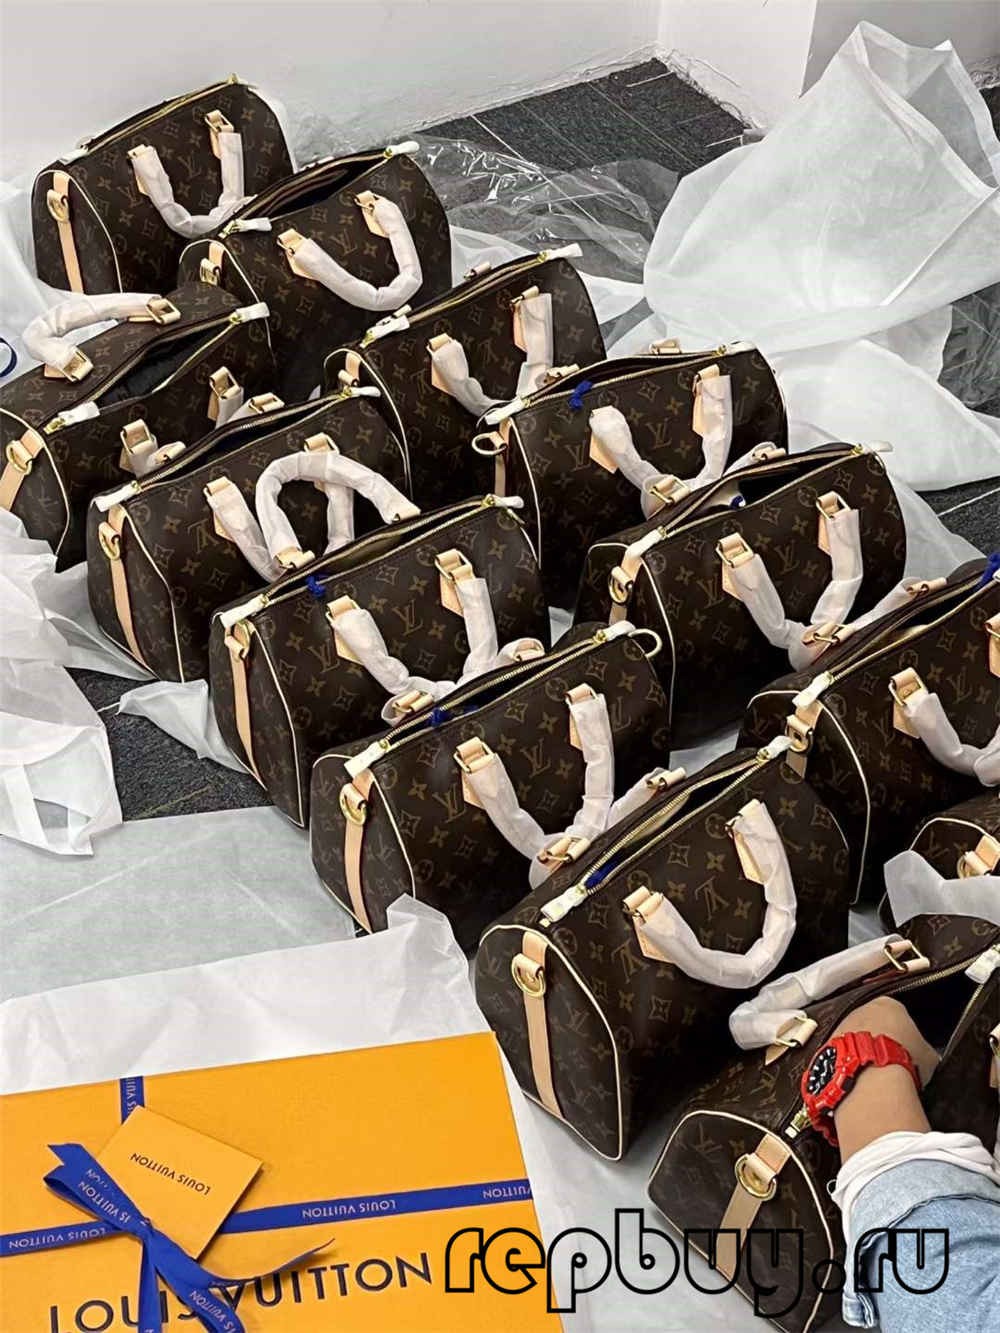 Achat en ligne de répliques de sacs Louis Vuitton Speedy 25 de la meilleure qualité (mise à jour 2022)-Meilleure qualité de faux sac Louis Vuitton en ligne, réplique de sac de créateur ru